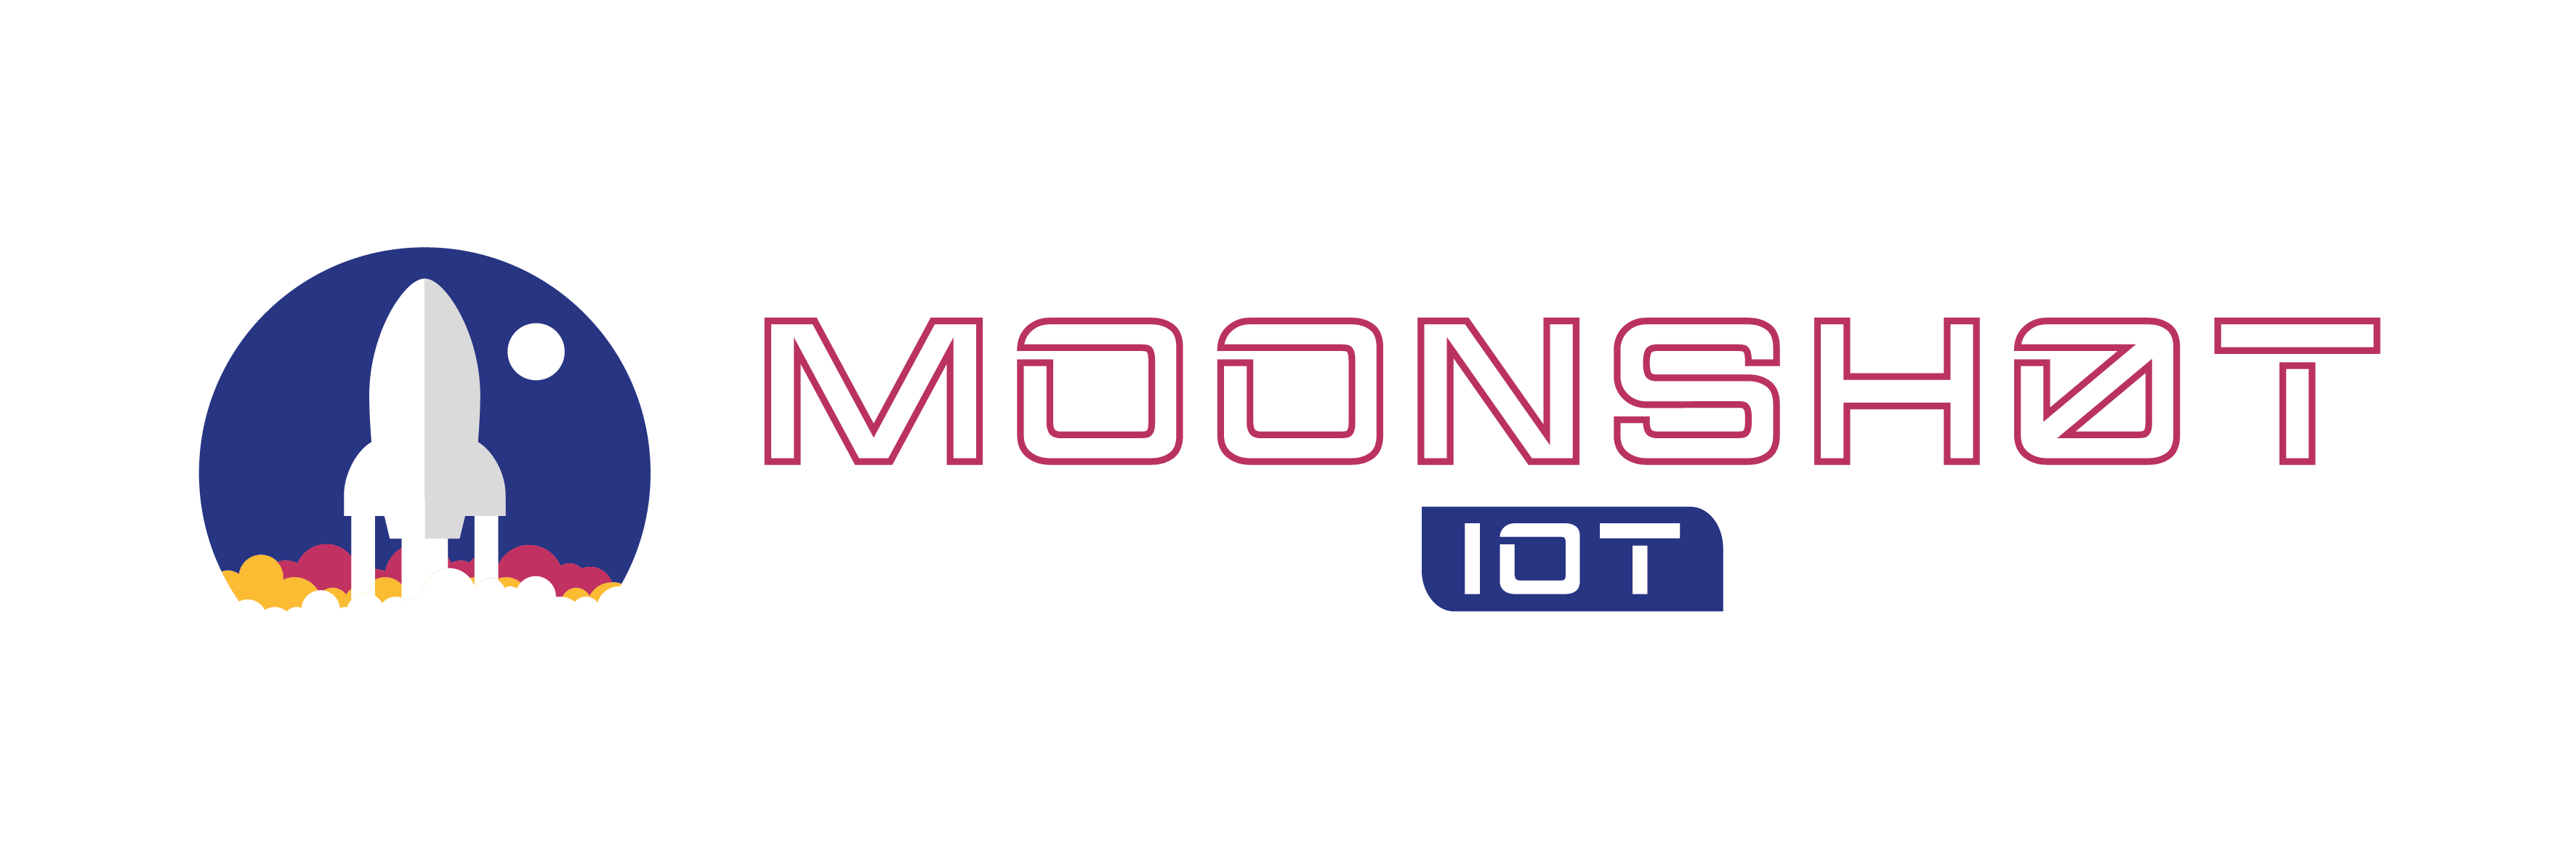 Logo_Moonshot_--4